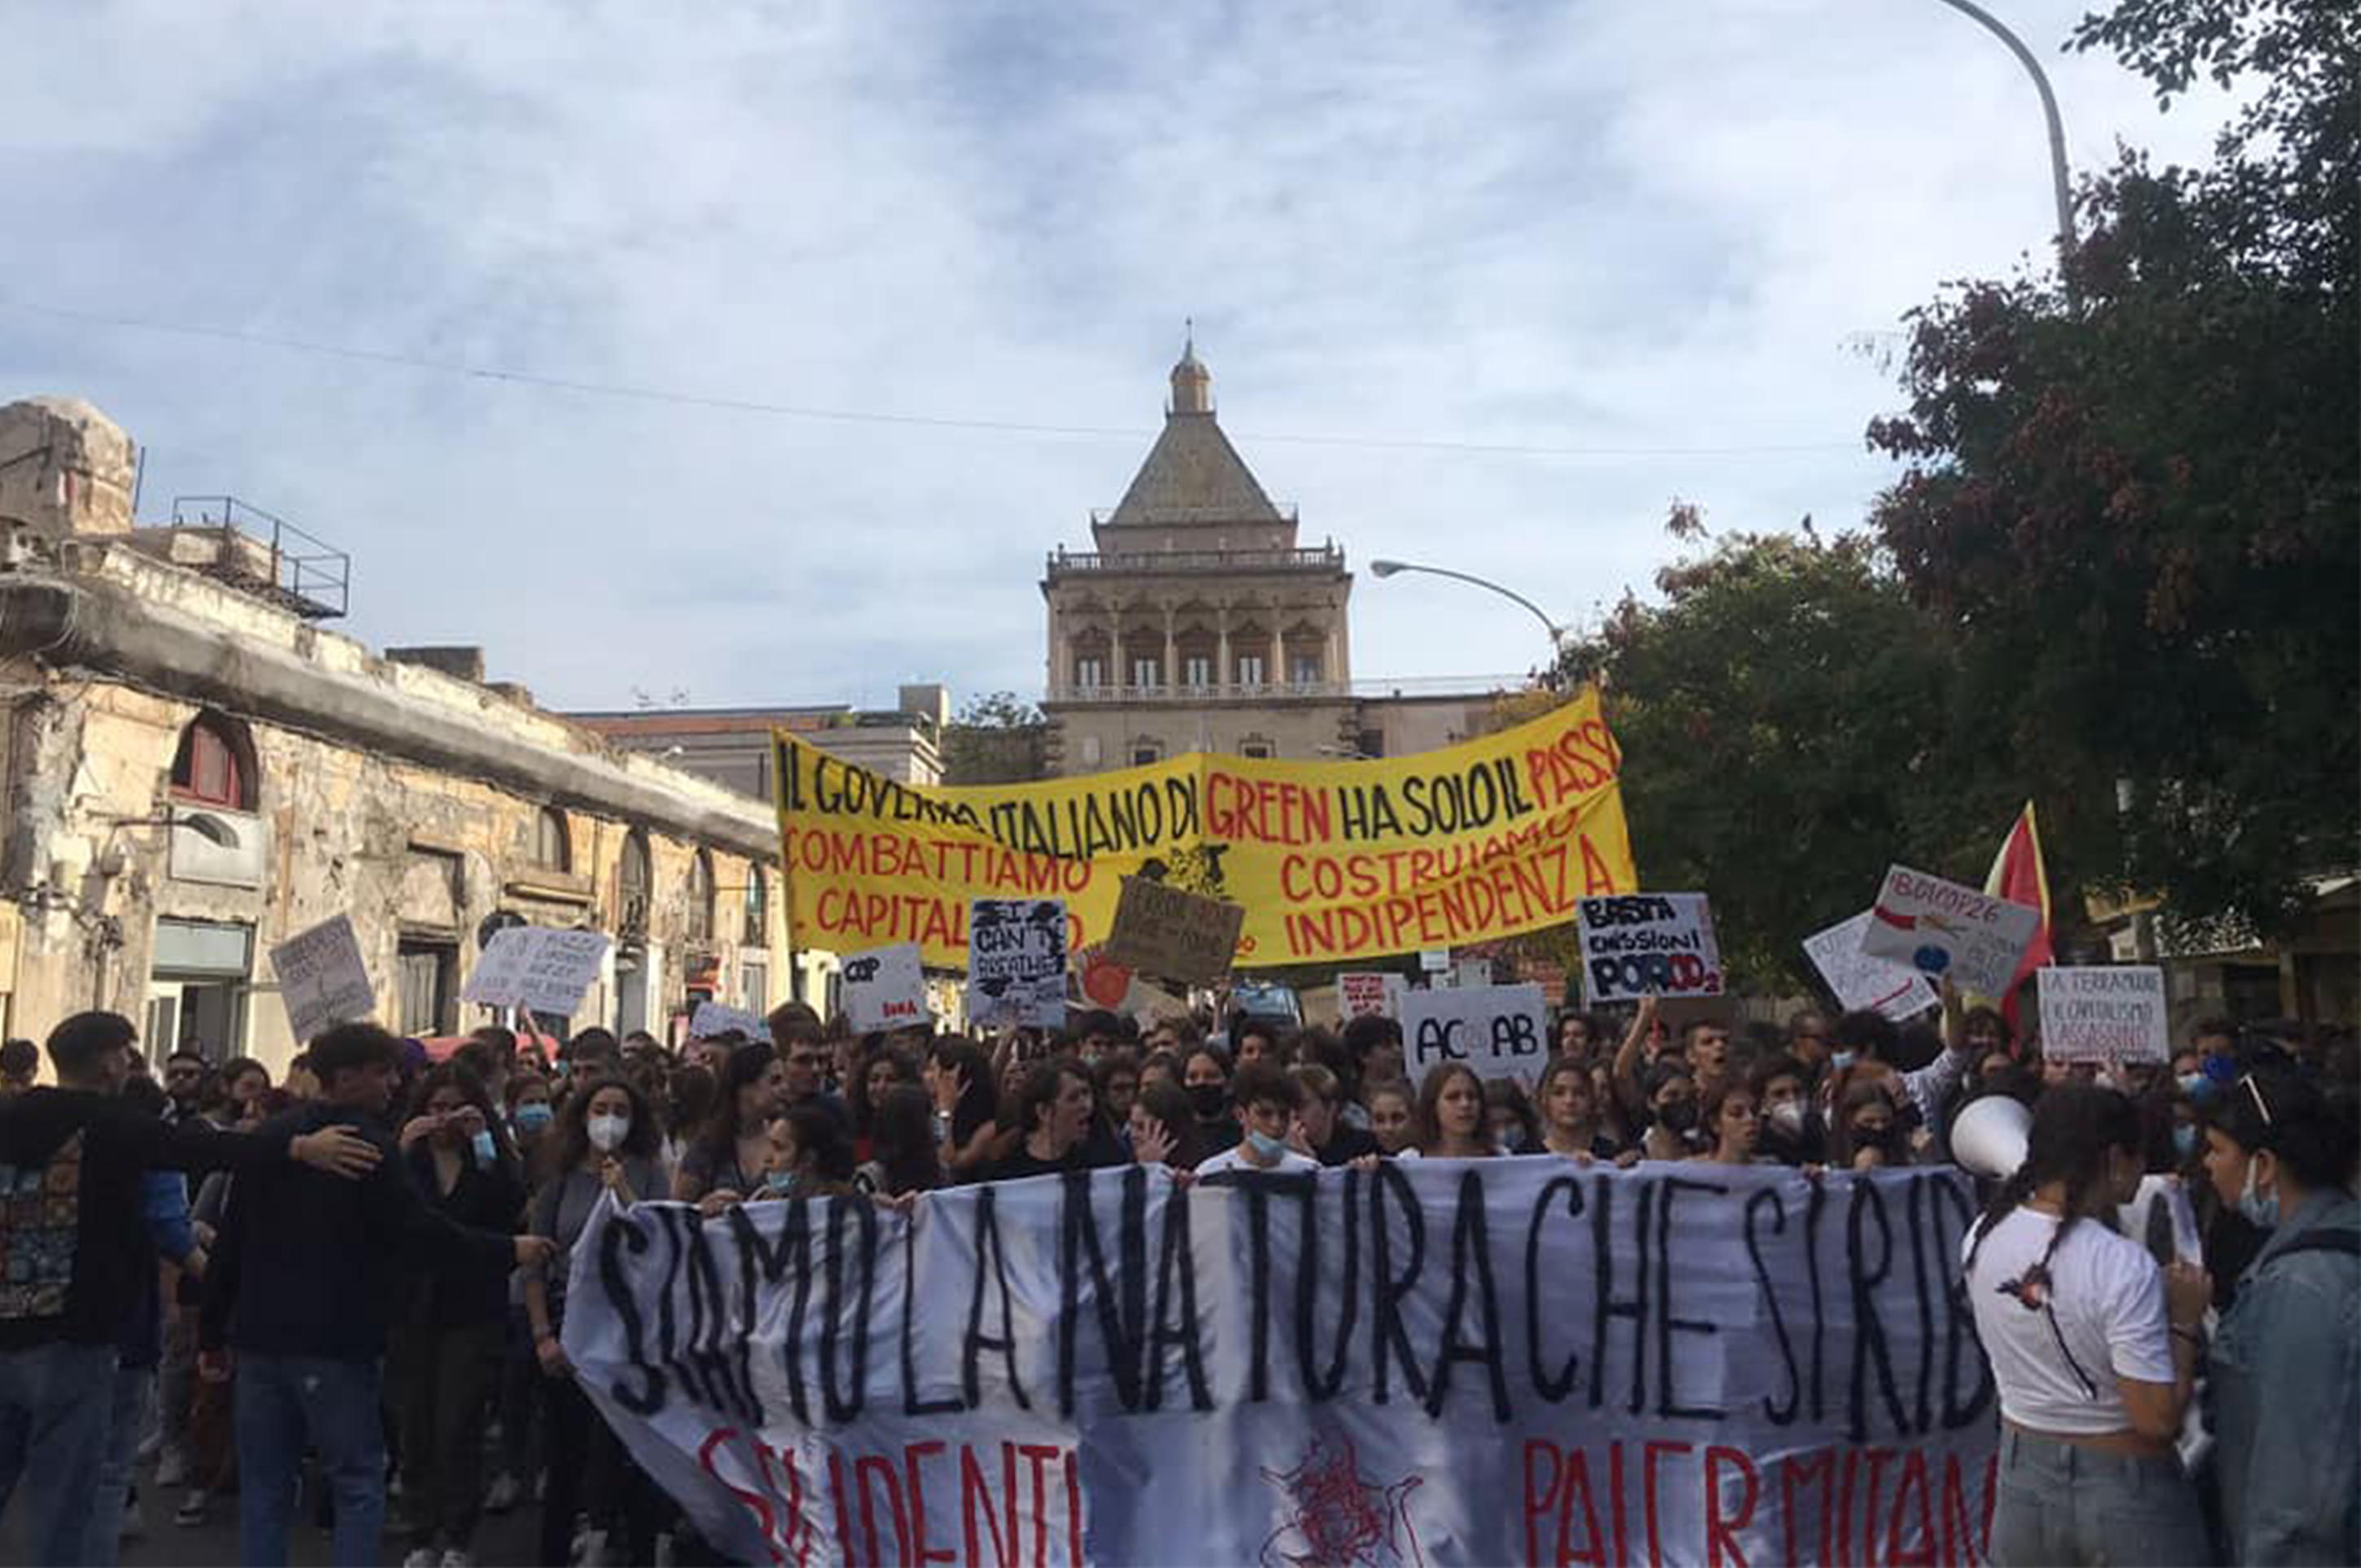 Palermo, in piazza per l’ambiente: «combattiamo il capitalismo, costruiamo indipendenza»